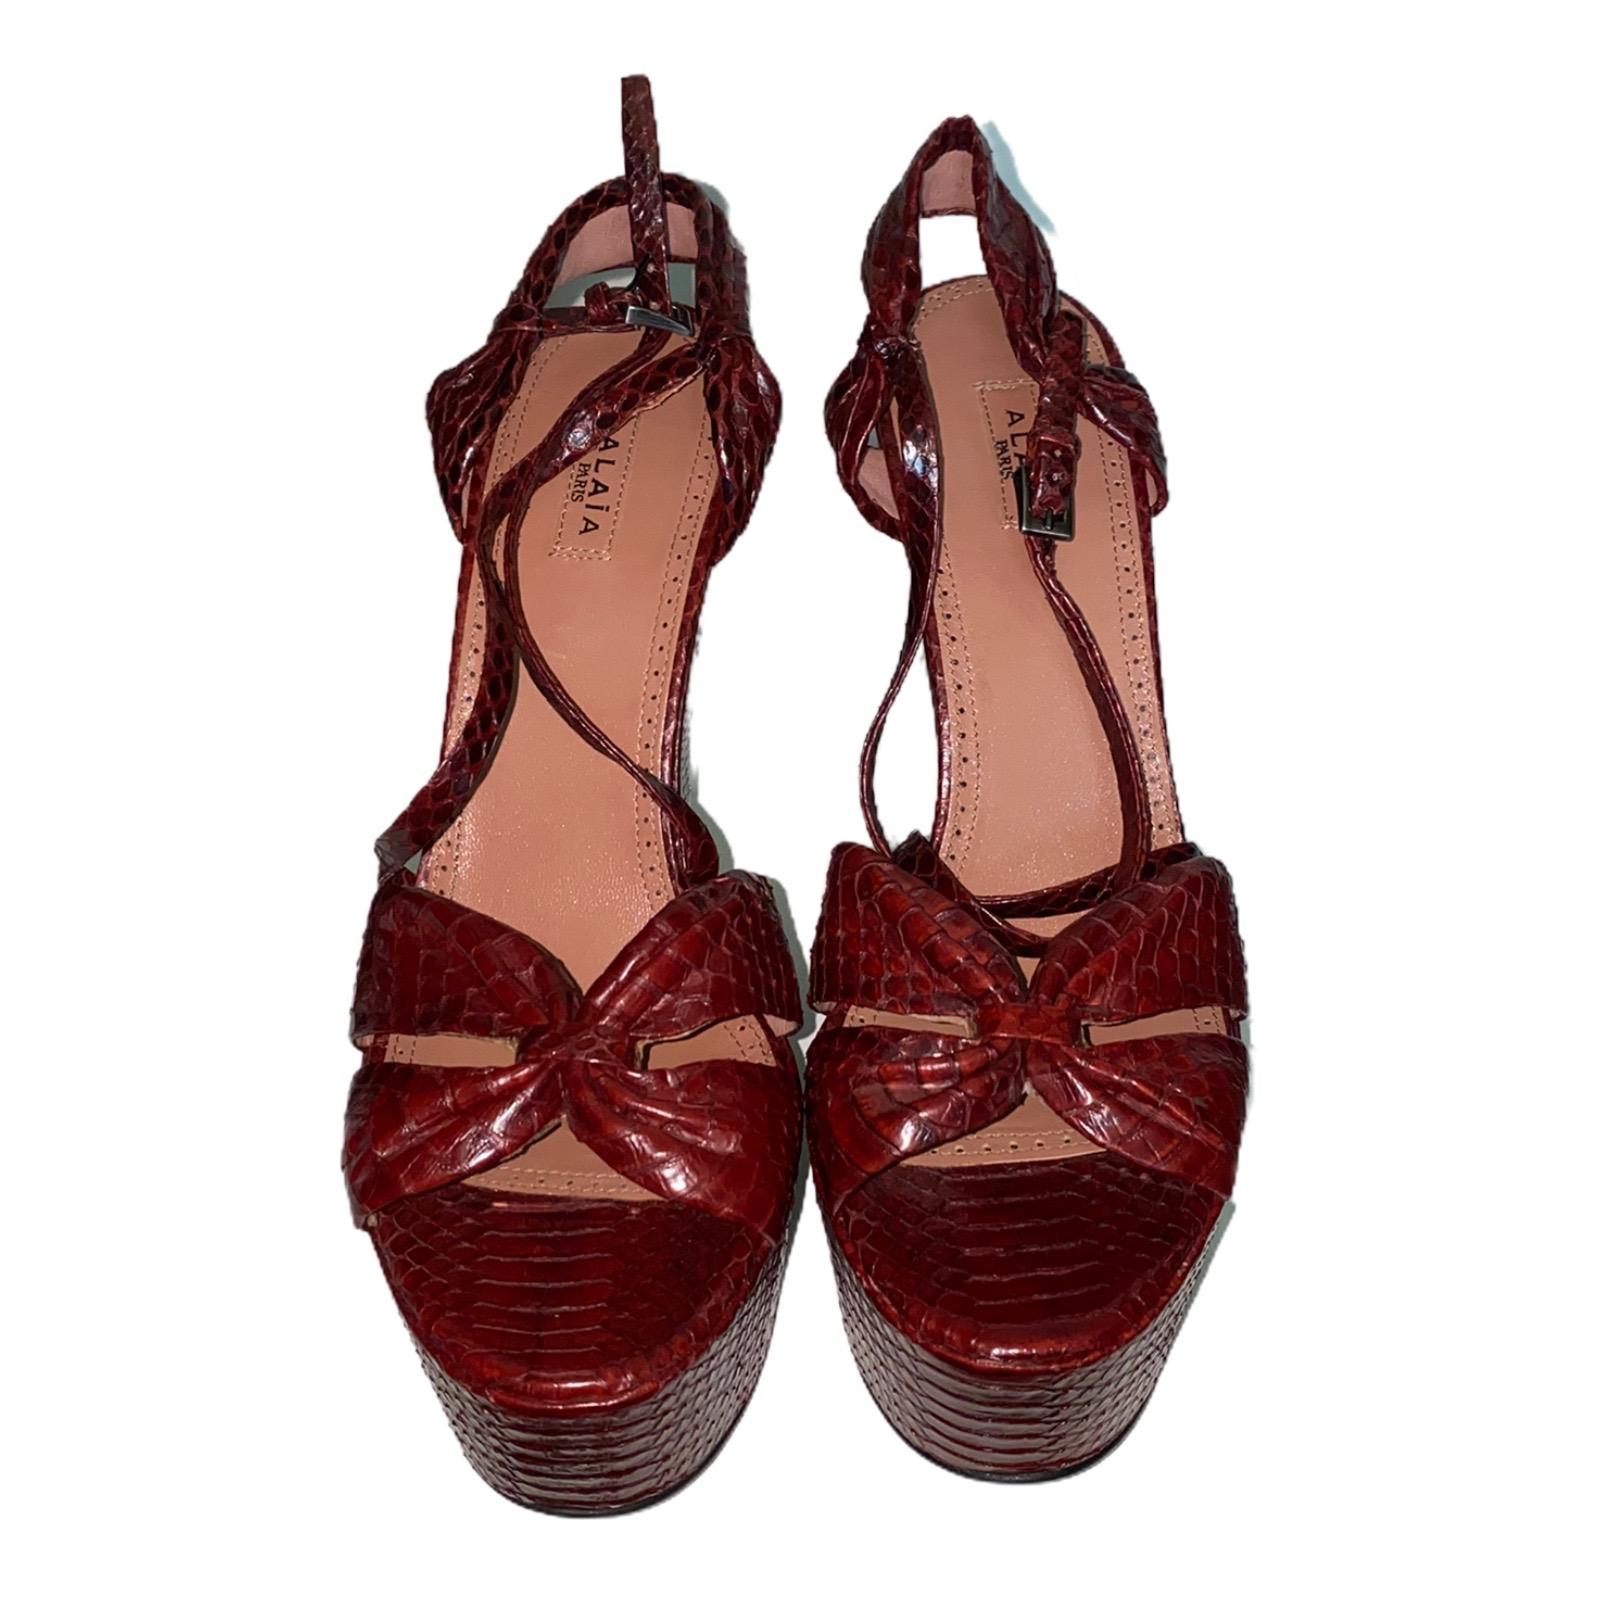 Une pièce de signature classique d'AZZEDINE ALAIA qui vous accompagnera pendant des années
Cette magnifique paire de chaussures compensées fabriquées à partir de la plus belle peau exotique
Fermeture discrètement gravée de 